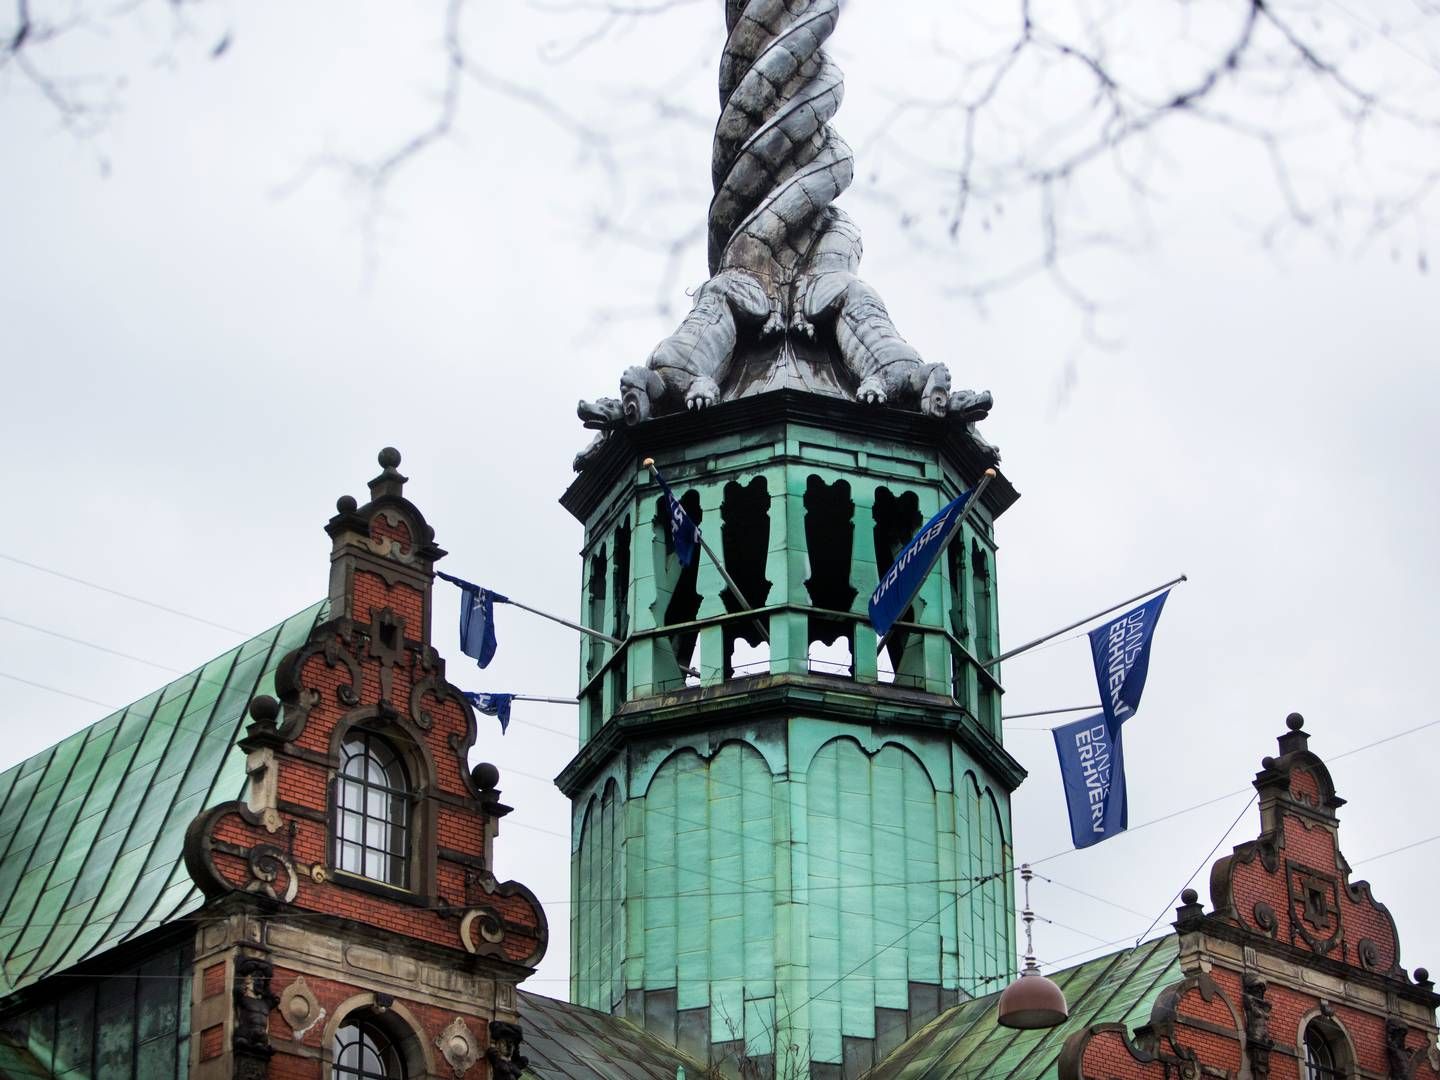 Hos Dansk Erhverv er man bekymret for, at nye EU-regler kan blive en hæmsko for danske og europæiske virksomheder. | Foto: Louise Herrche Serup